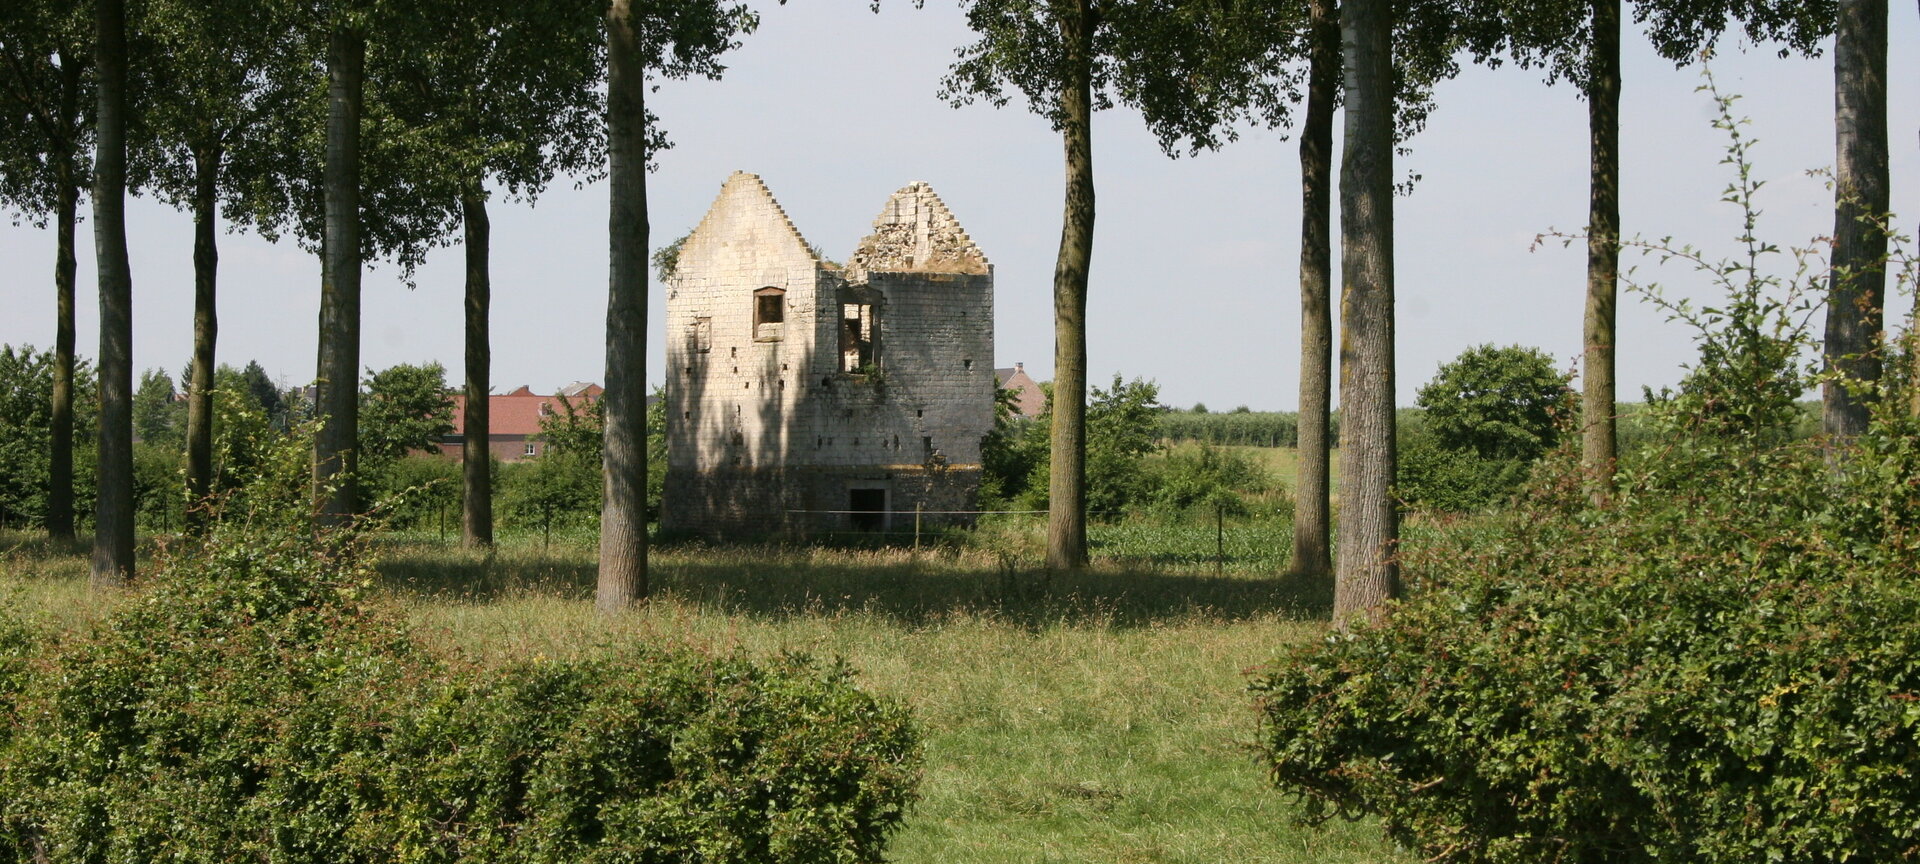 Kasteel en donjon van Hamal - Torenburcht Hamal